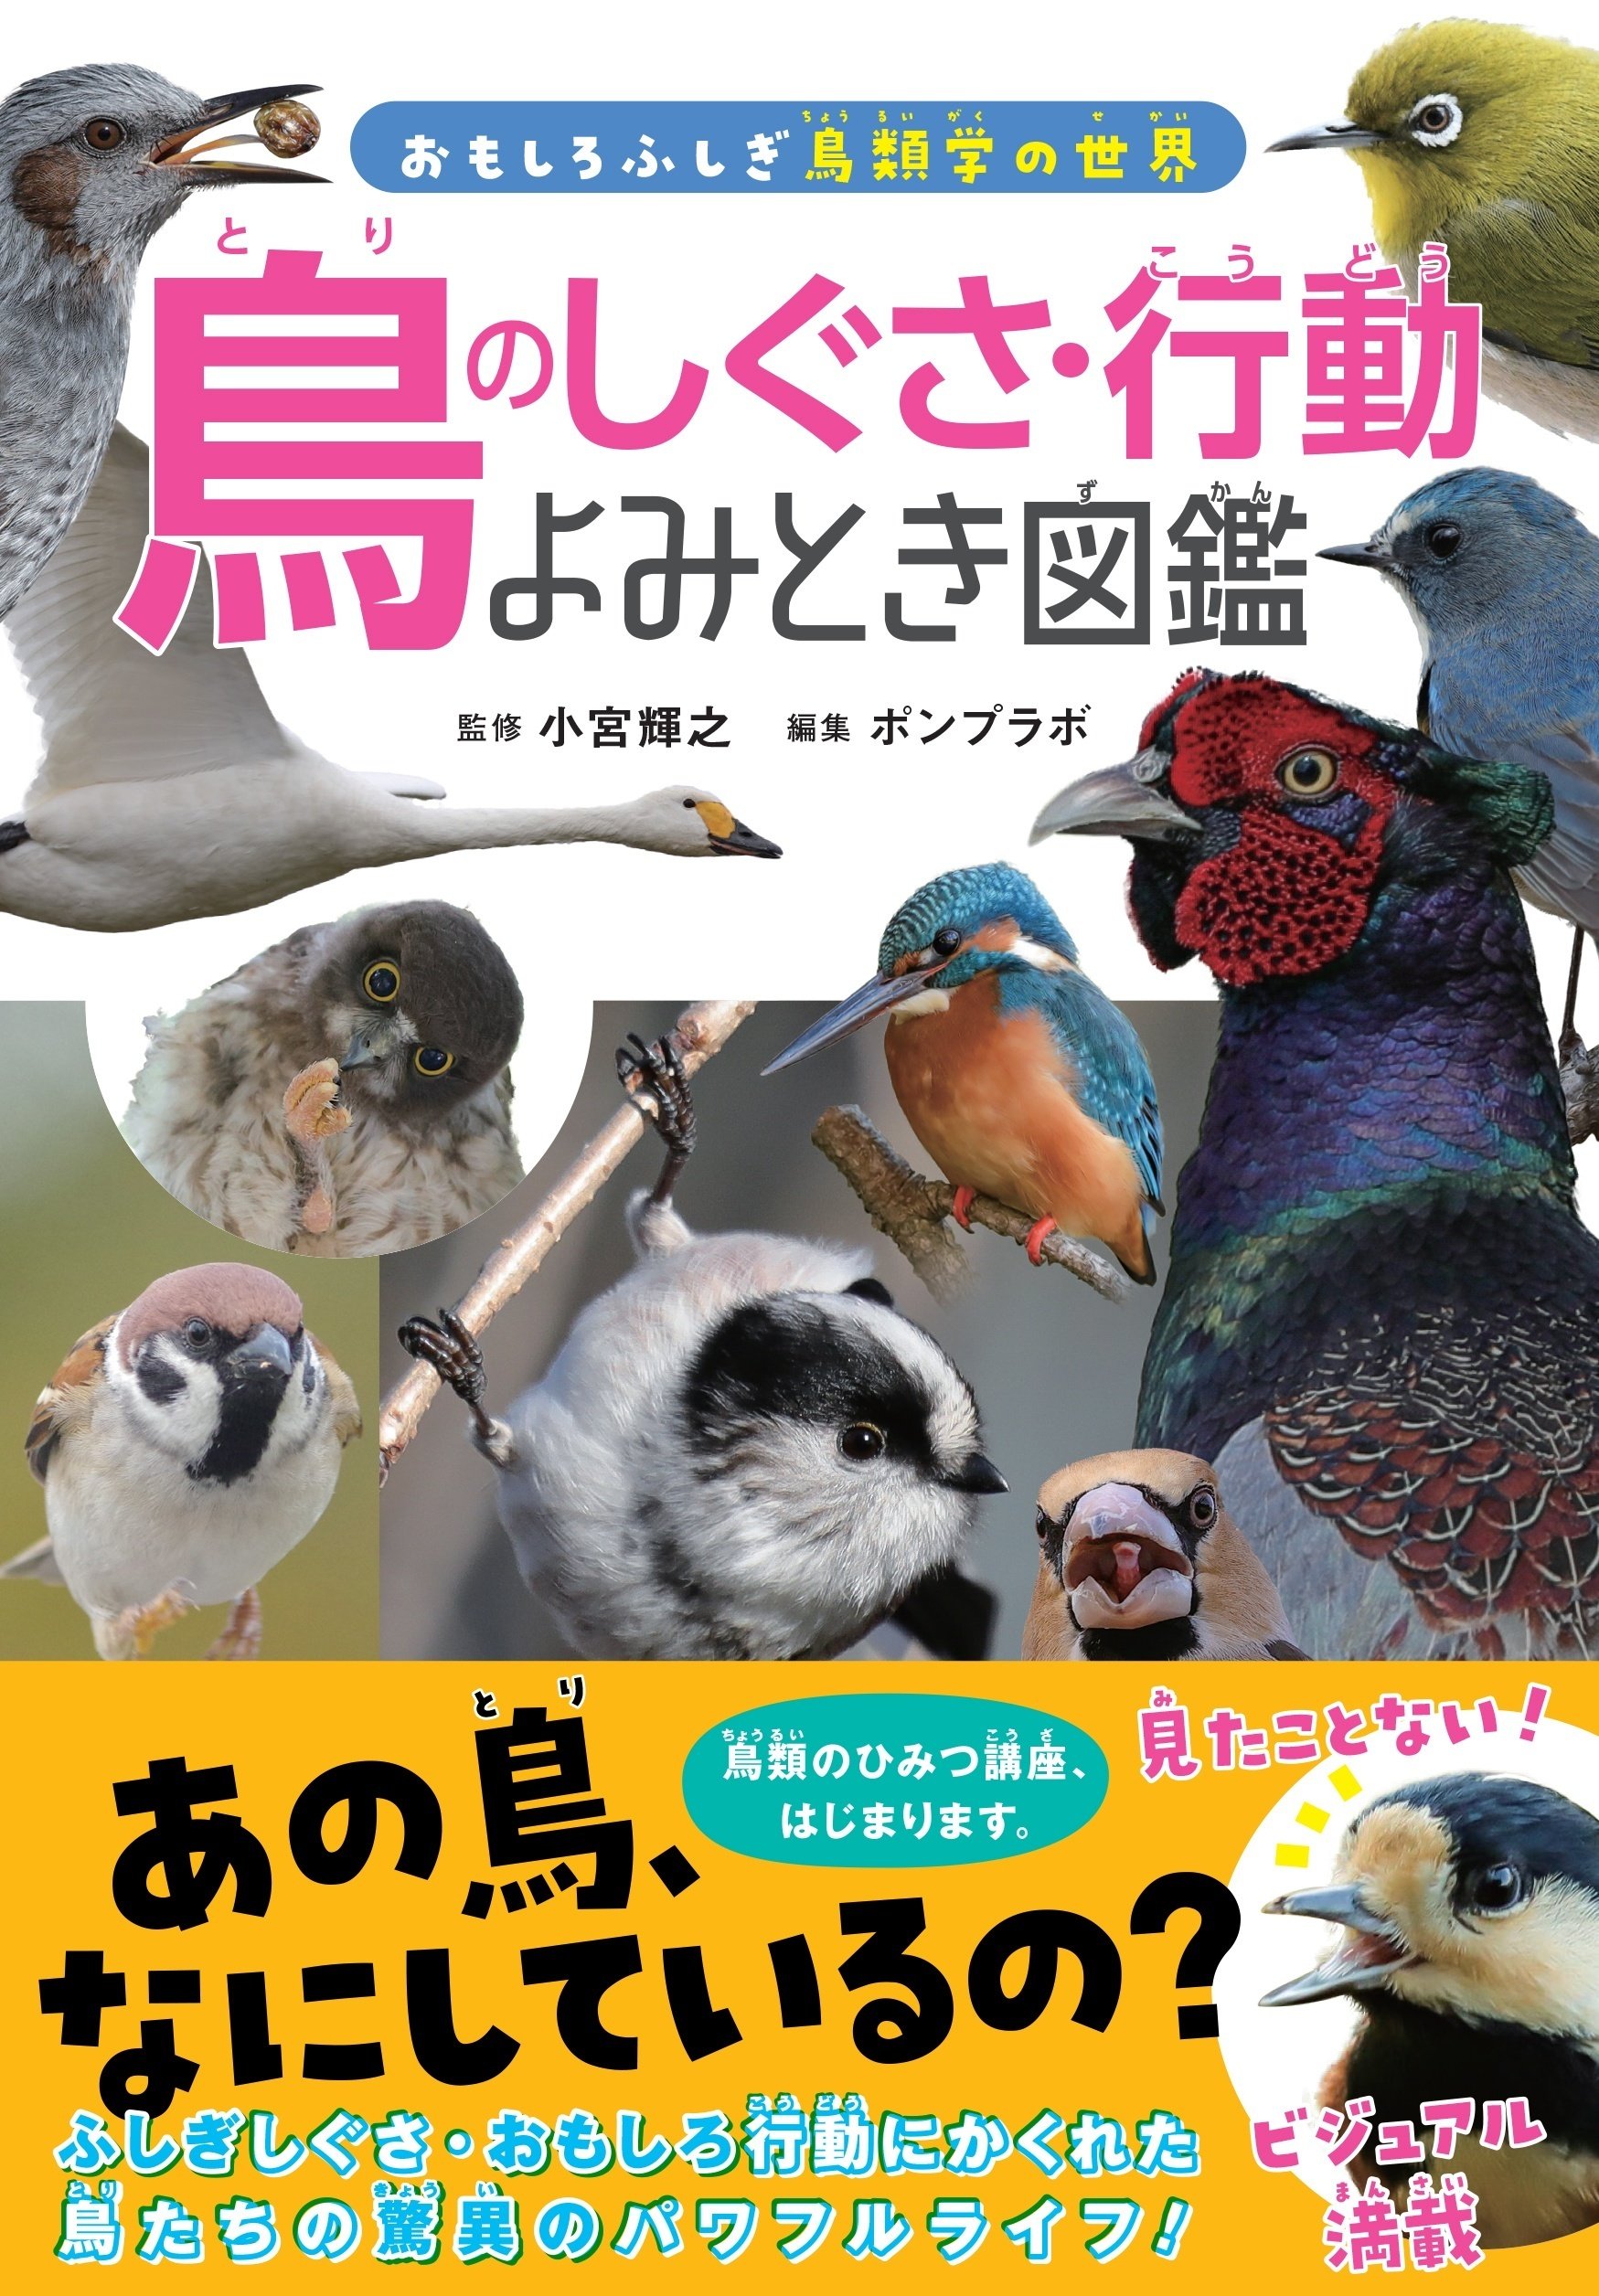 鳥類学自然生物学